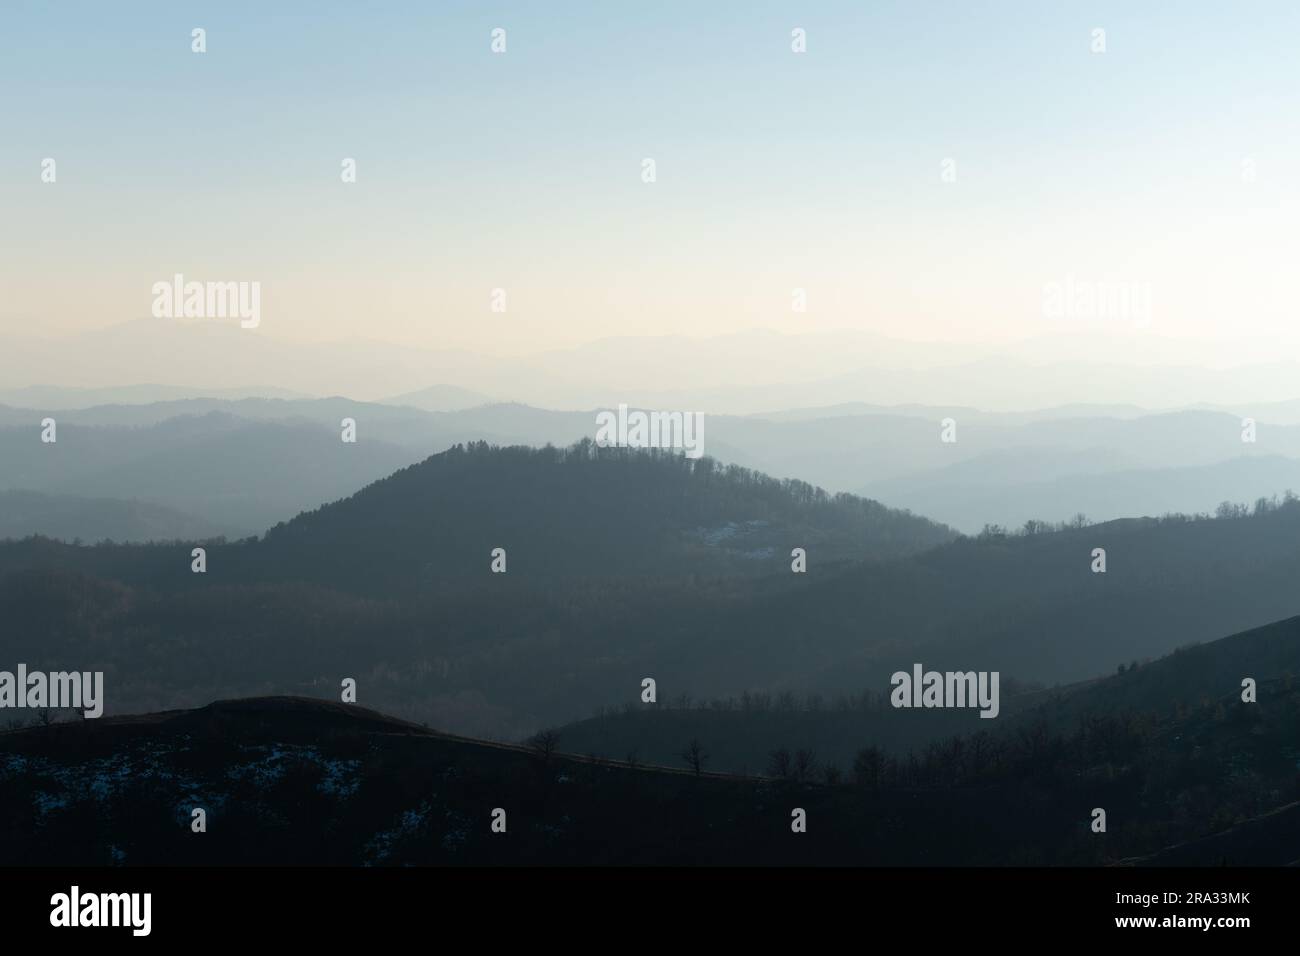 Paesaggio di strati di montagna in foschia che svaniscono in lontananza, vista dalla montagna Ljubic vicino a Prnjavor Foto Stock